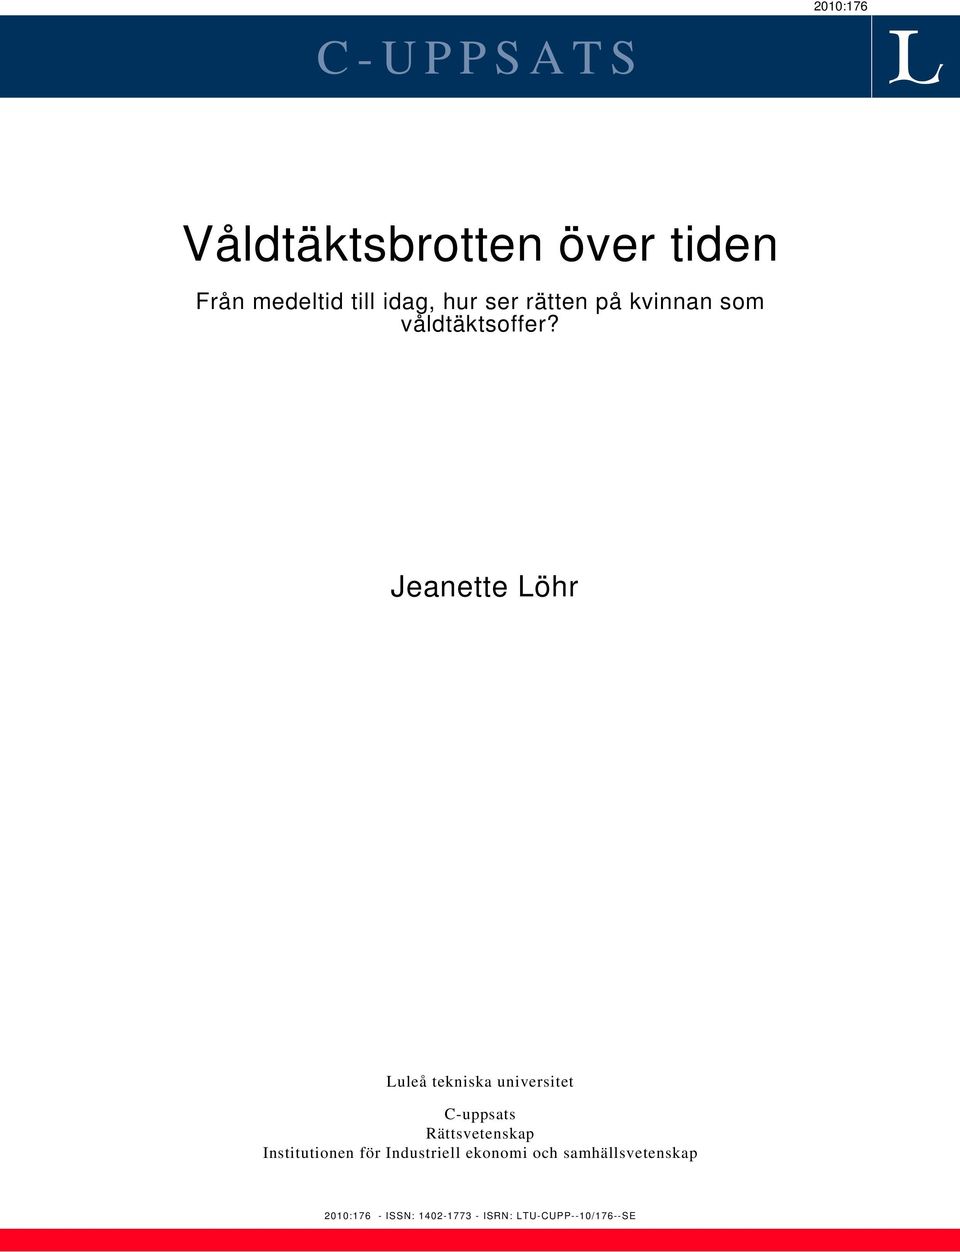 Jeanette Löhr Luleå tekniska universitet C-uppsats Rättsvetenskap